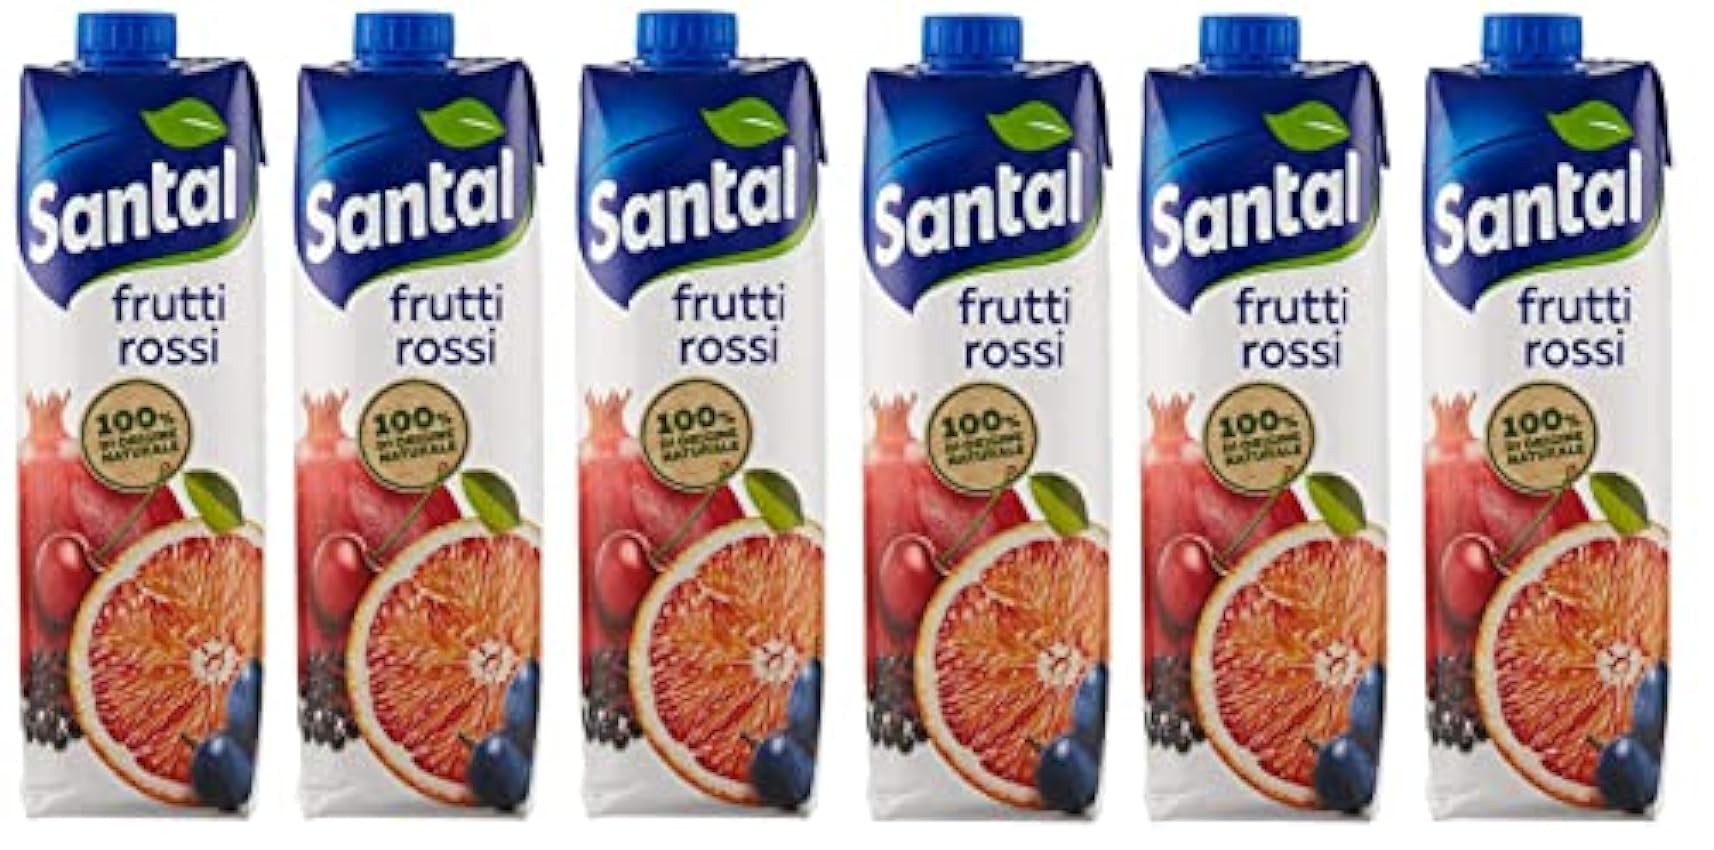 Parmalat Santal I Classici Succo di Frutta Frutti Rossi